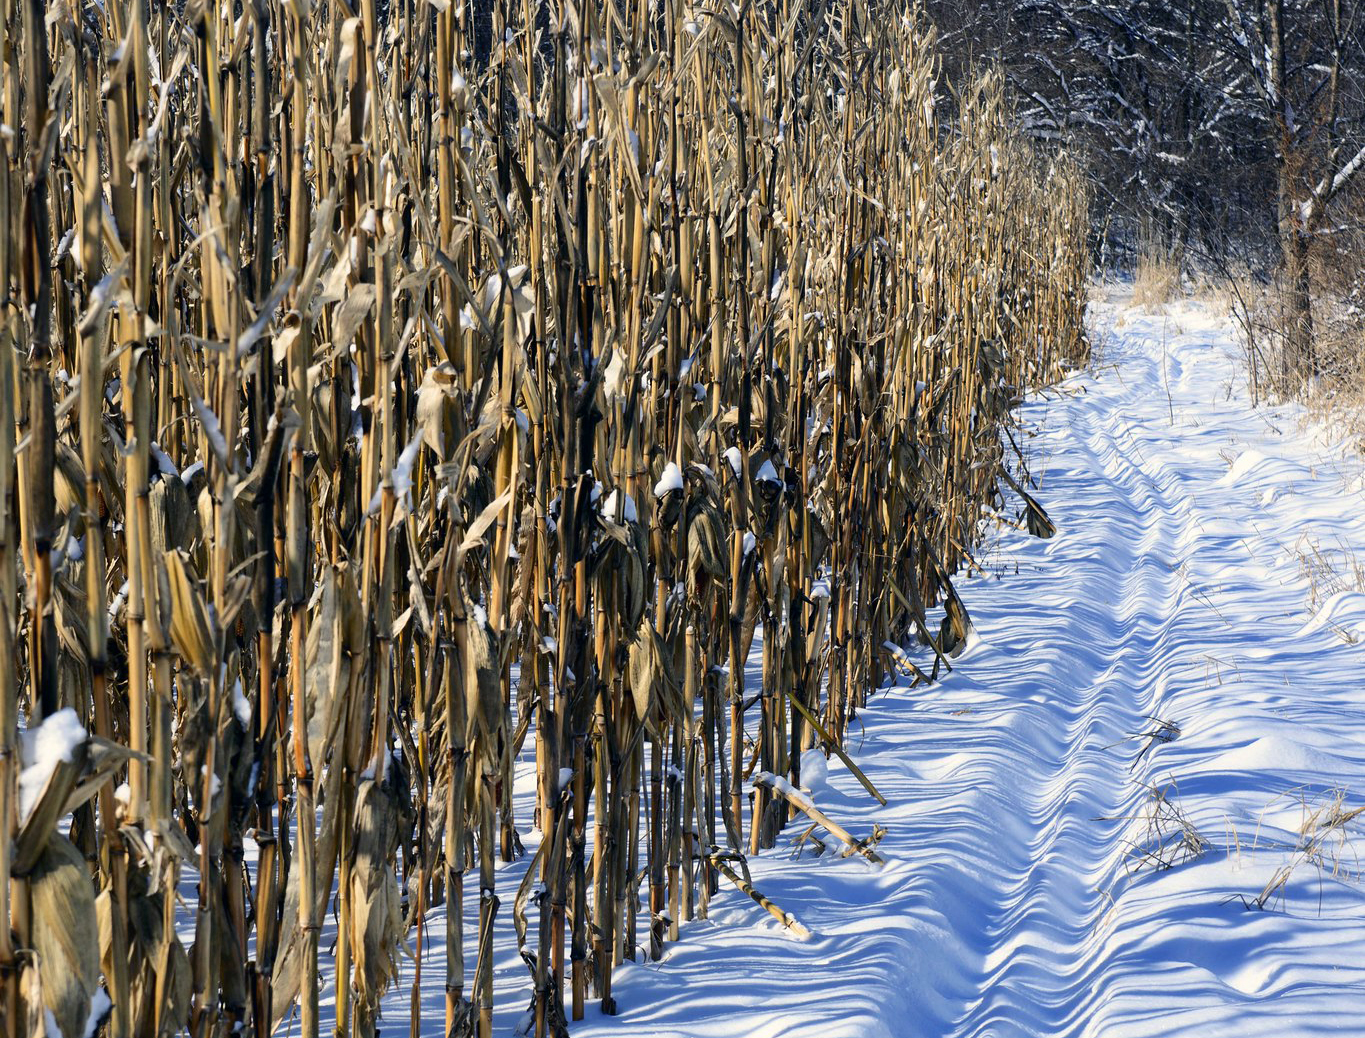 Snow in a cornfield